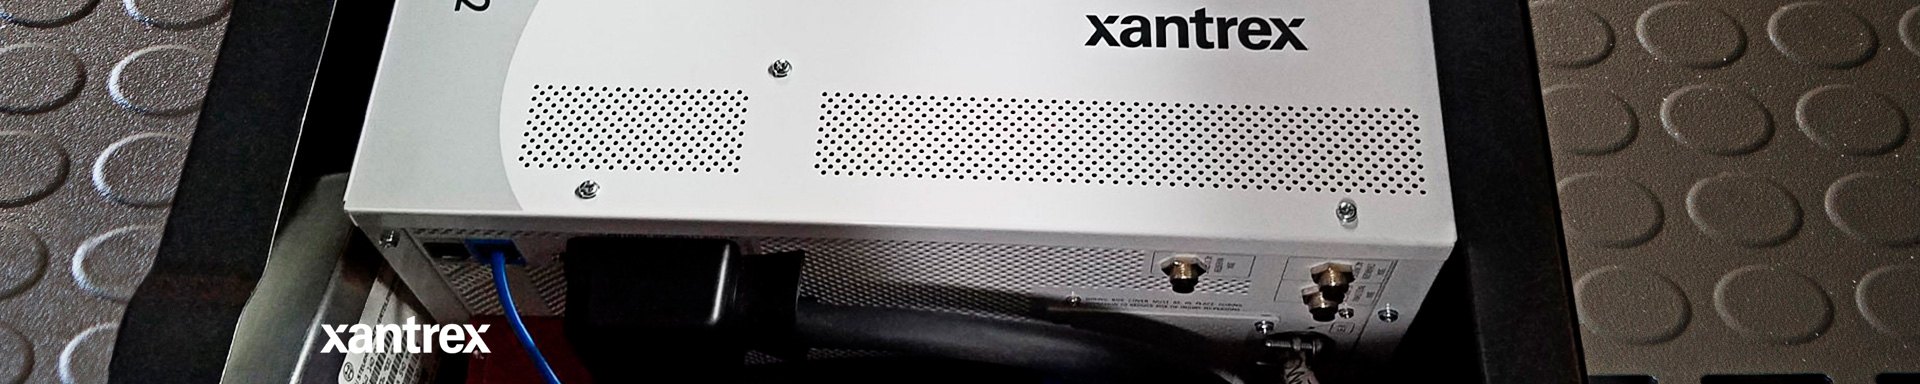 Xantrex RV Converters & Inverters